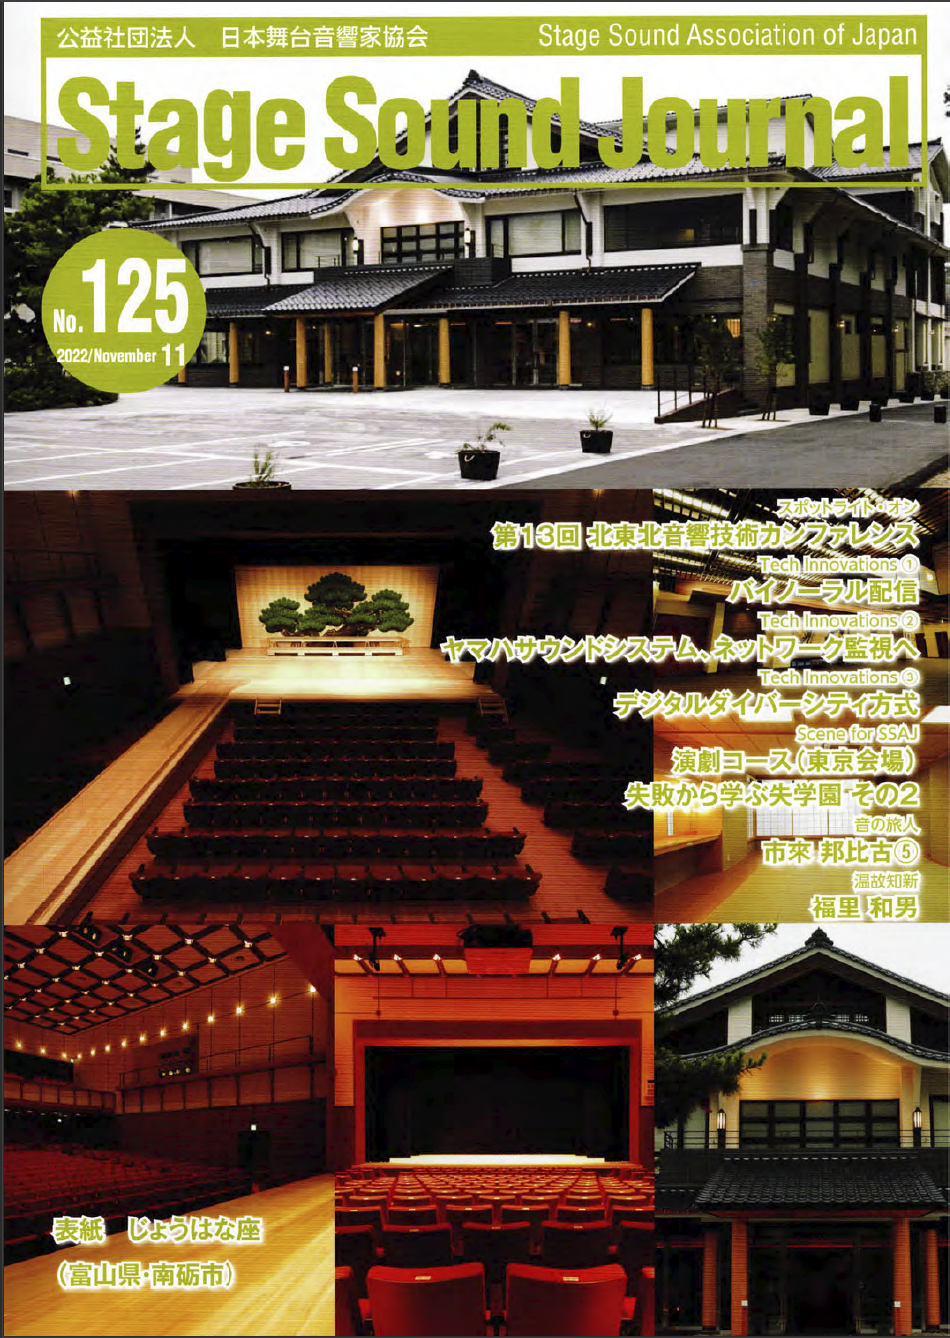 stage-sound-journal-No125表紙1 機関紙「Stage Sound Journal No.125」にRA-6010-HPLを用いた事例が掲載されました。